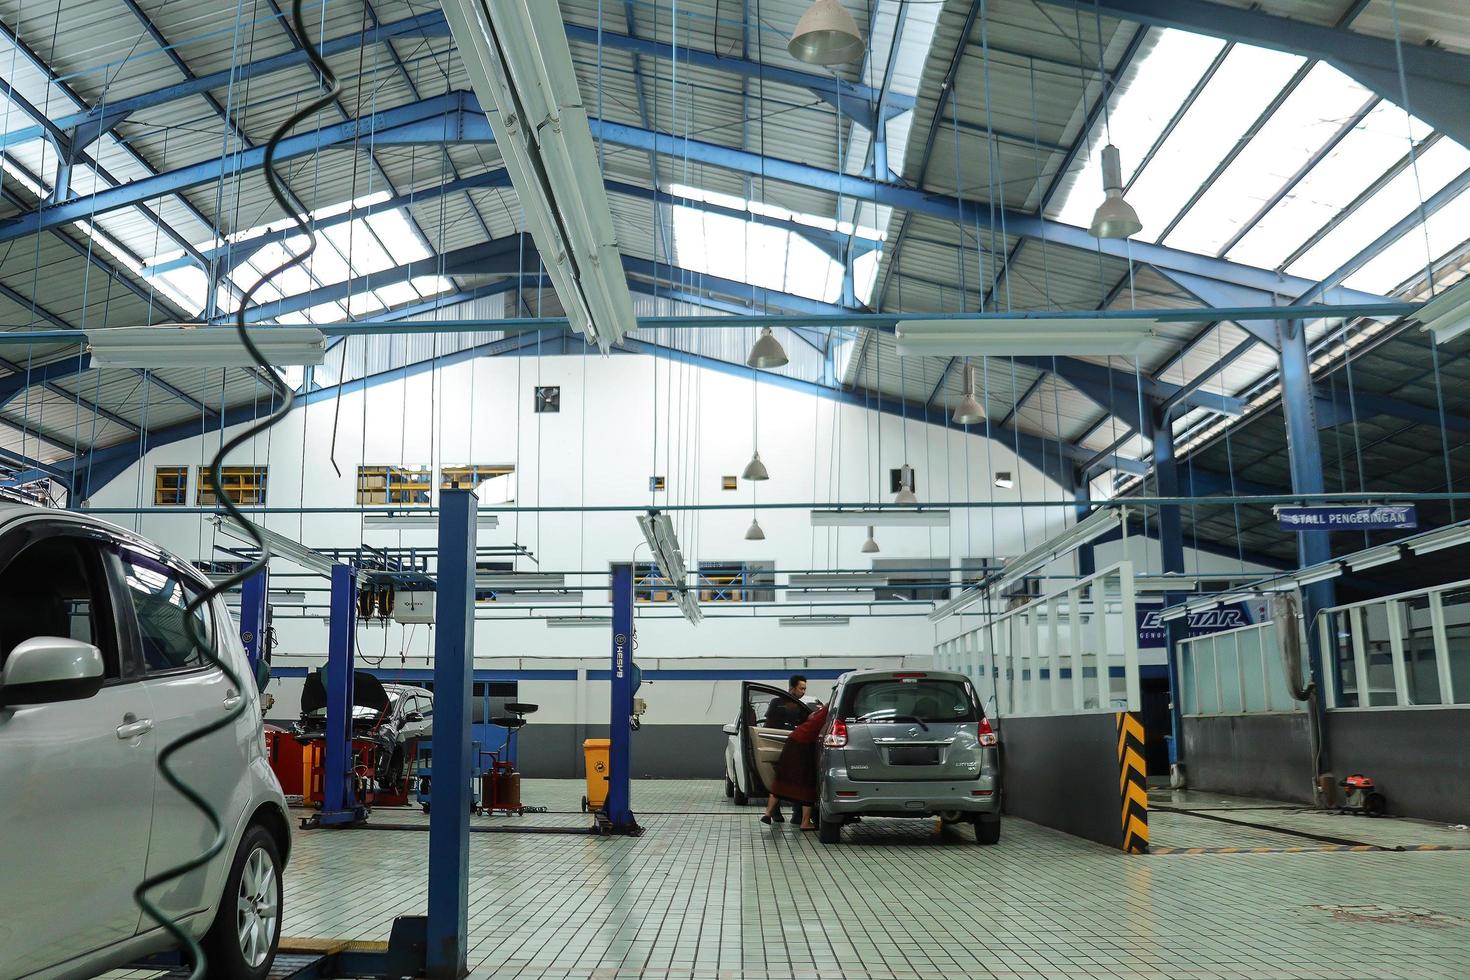 bandung, indonésia 19 de janeiro de 2022 oficina de automóveis, carros atendidos na estação de serviço foto